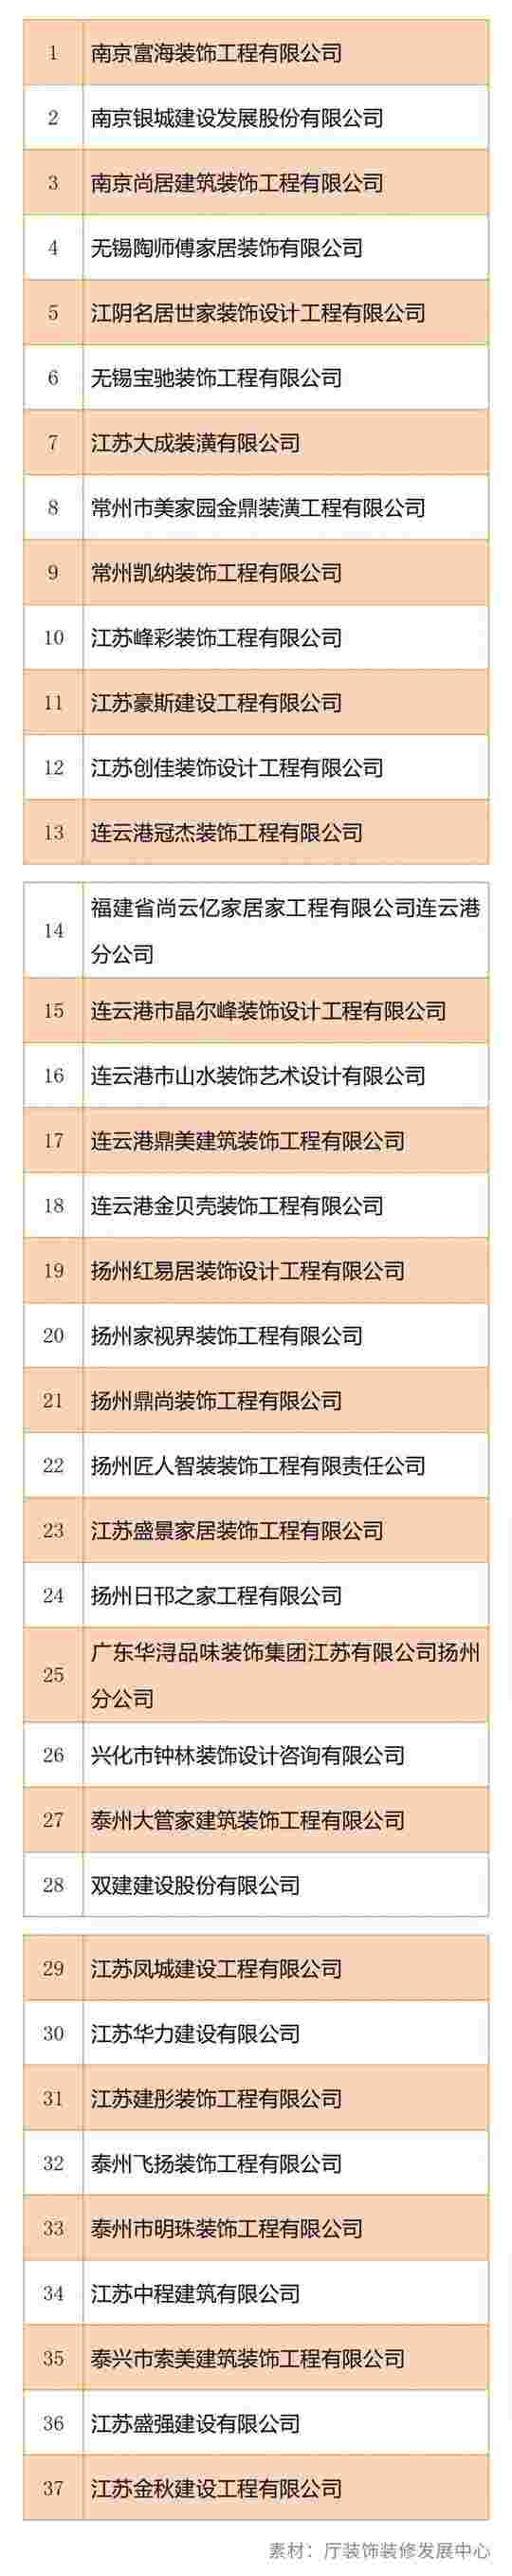 江苏公布2020年度“江苏省住宅装修放心消费”示范企业名单